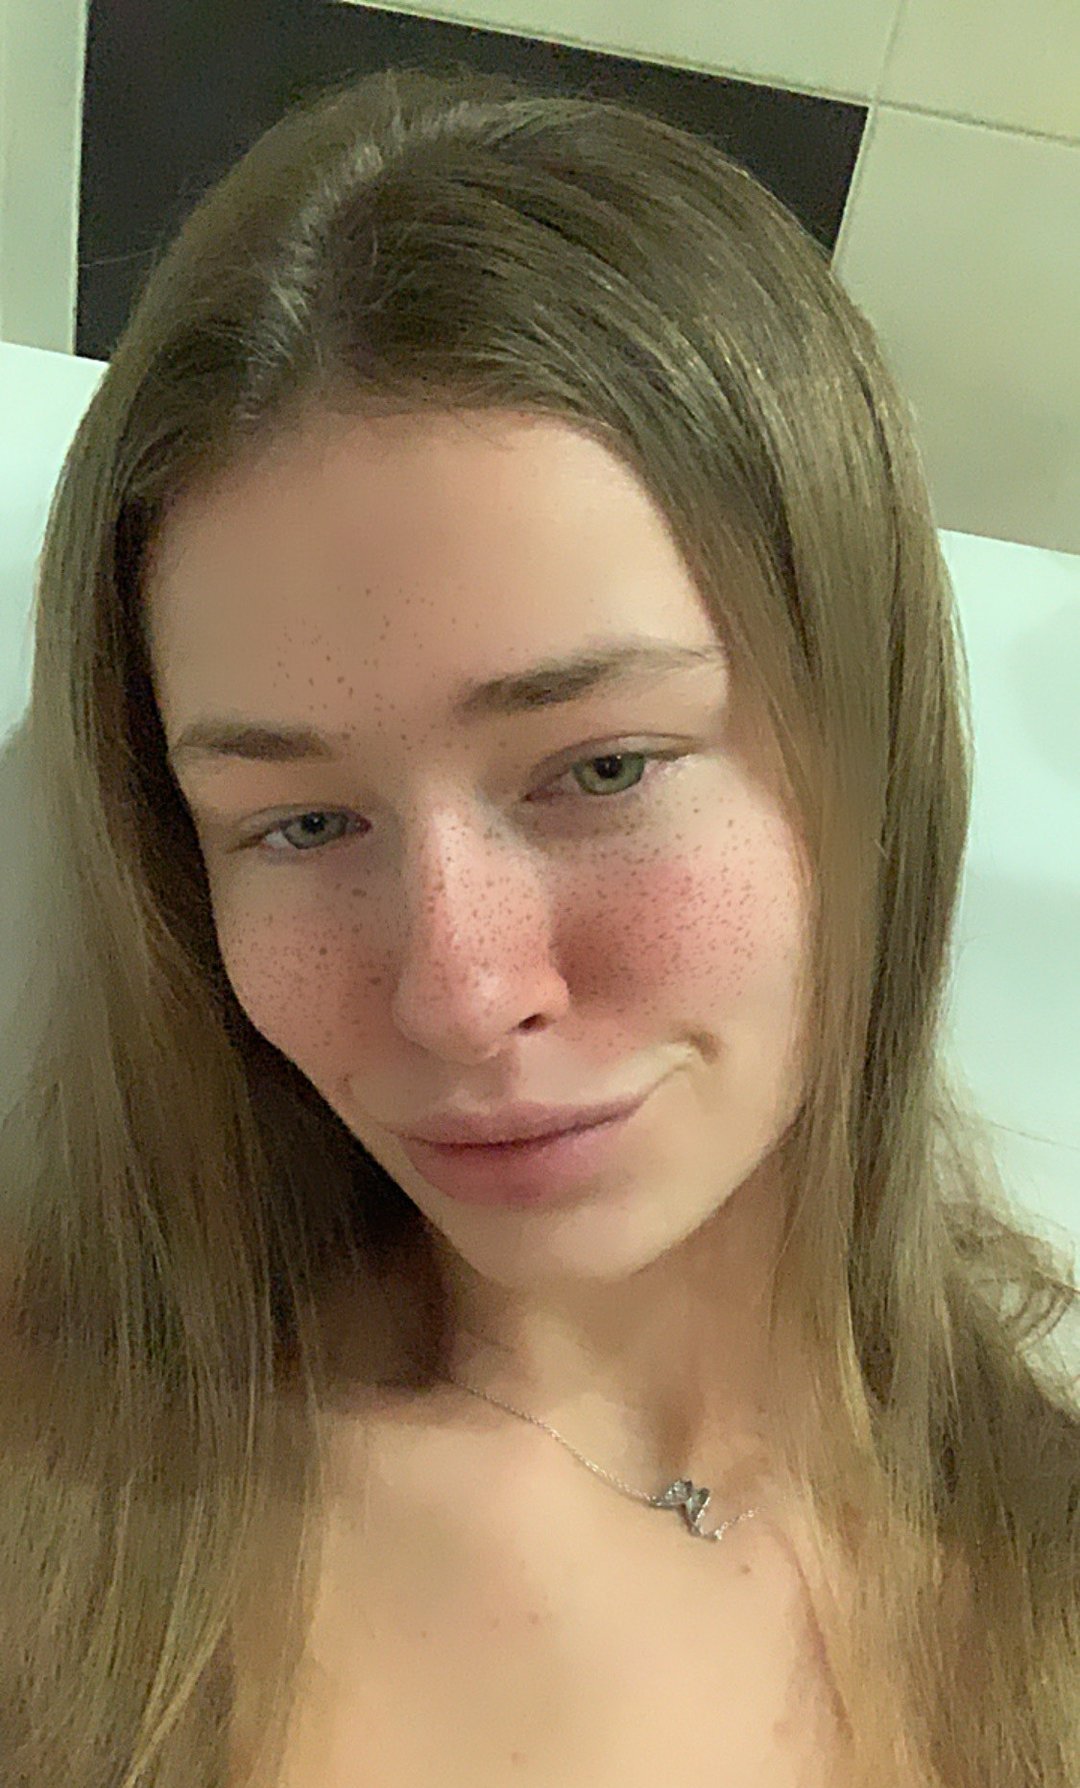 Oksana Fedorova Ooksiii OnlyFans Nude Leaks 0009